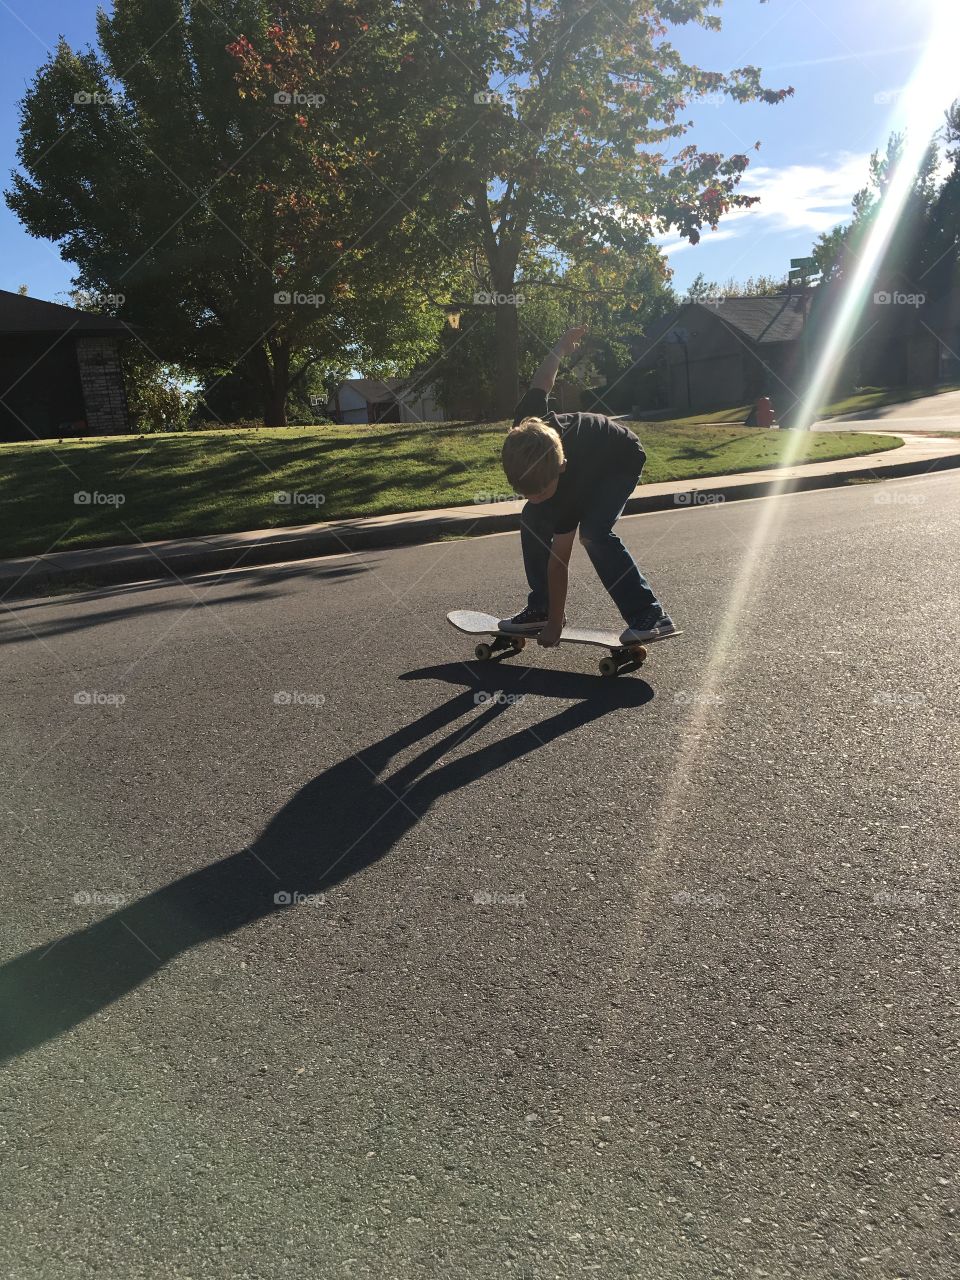 Child Skateboarding